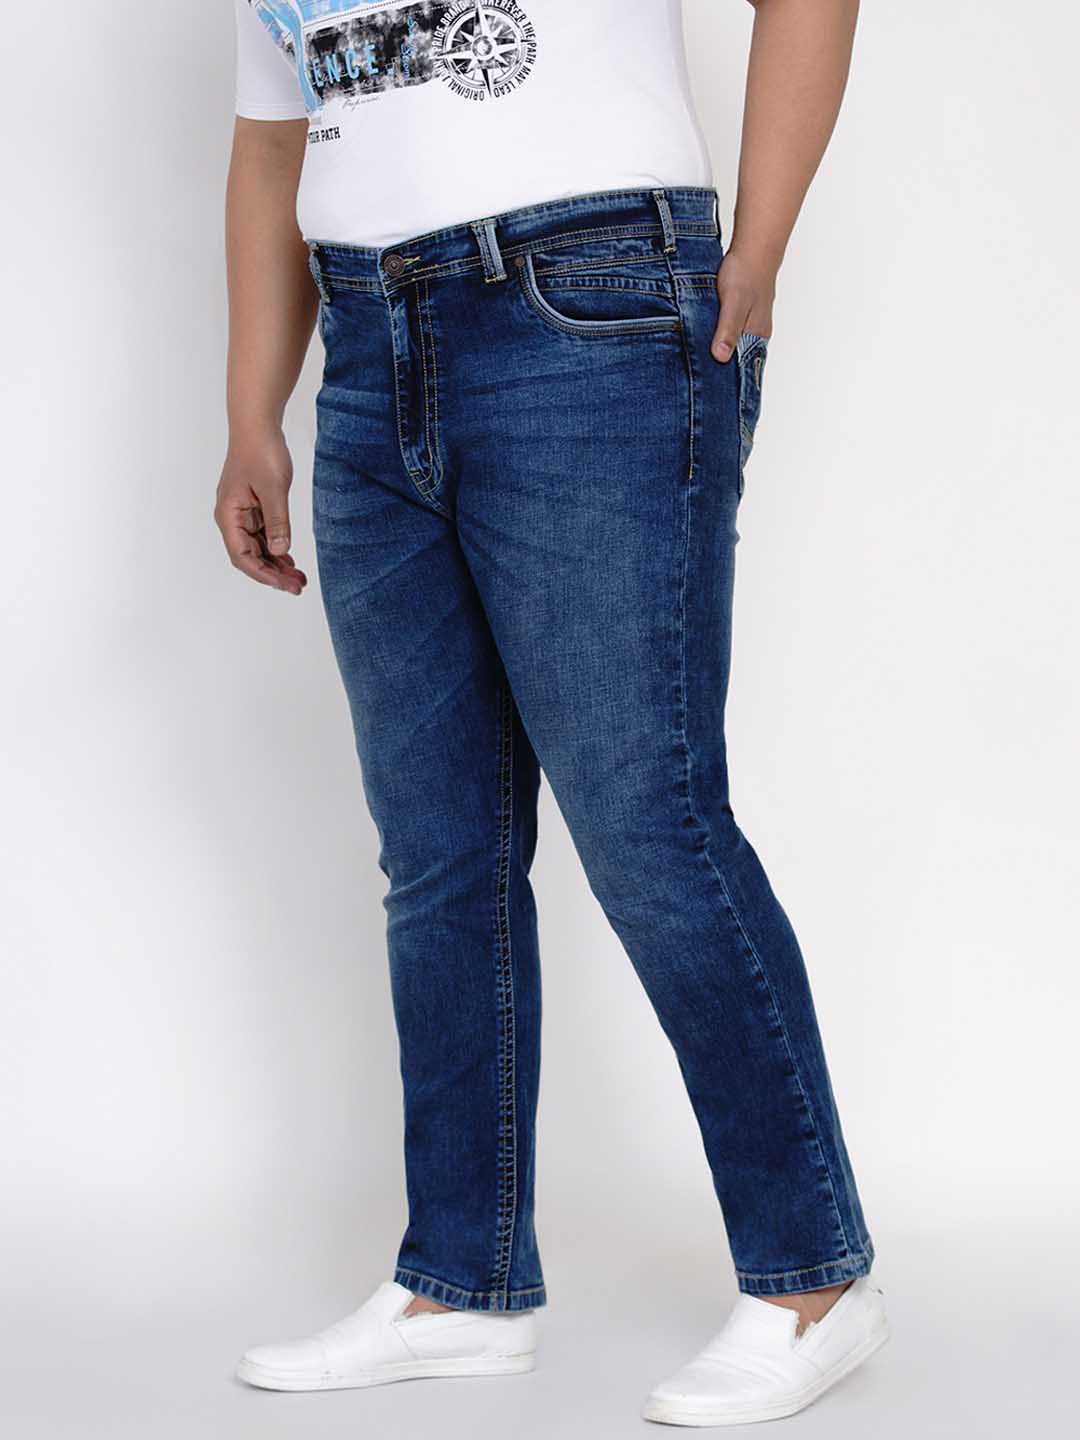 bottomwear/jeans/JPJ12126/jpj12126-3.jpg